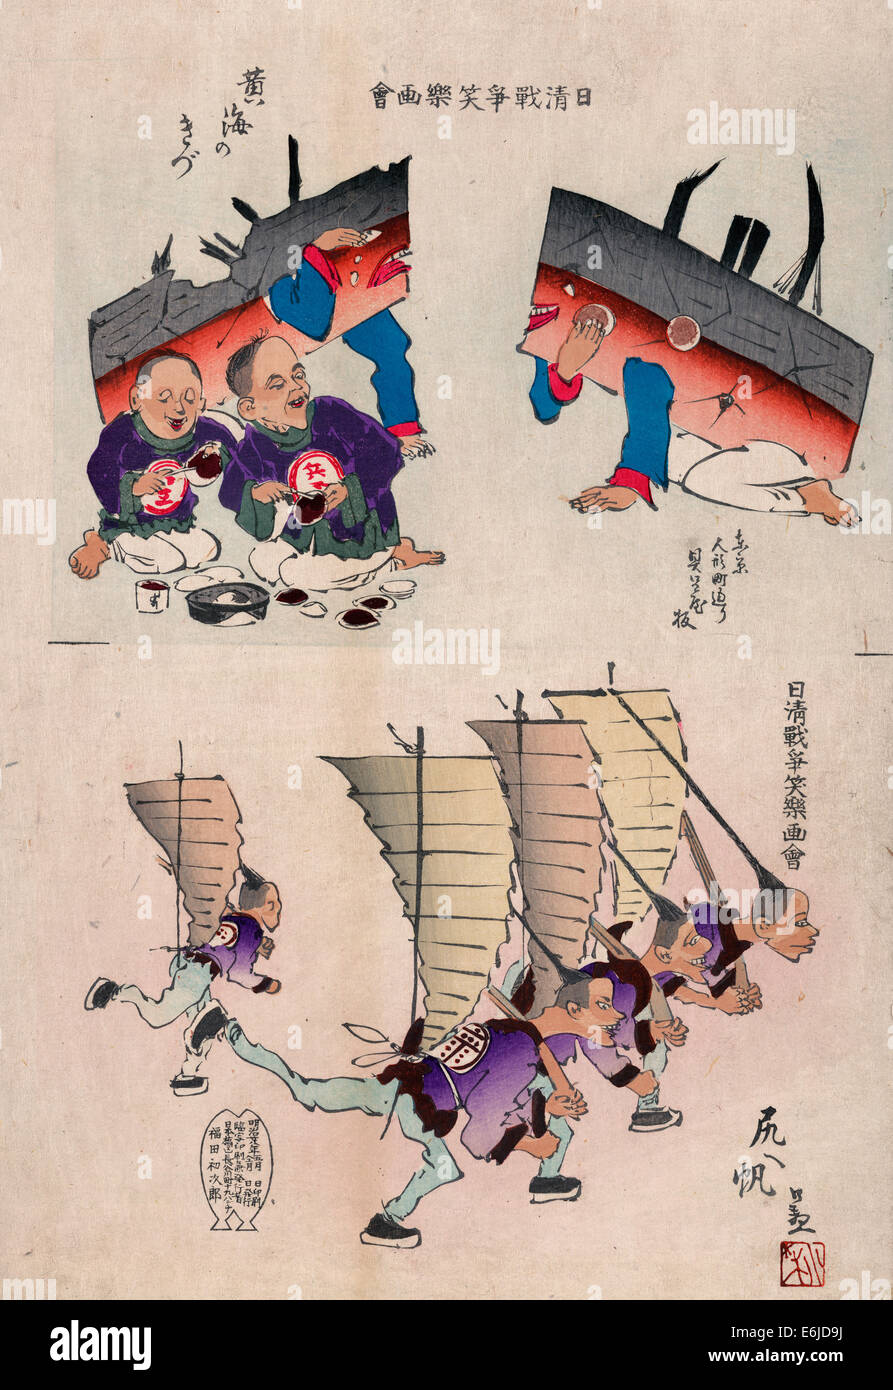 Images humoristiques montrant endommagé cuirassés chinois recevoir les premiers soins et les hommes chinois fonctionnant sous voiles (comme de jonques chinoises) sur le dos et l'exécution des fusils, gravure sur bois, 1895 Banque D'Images